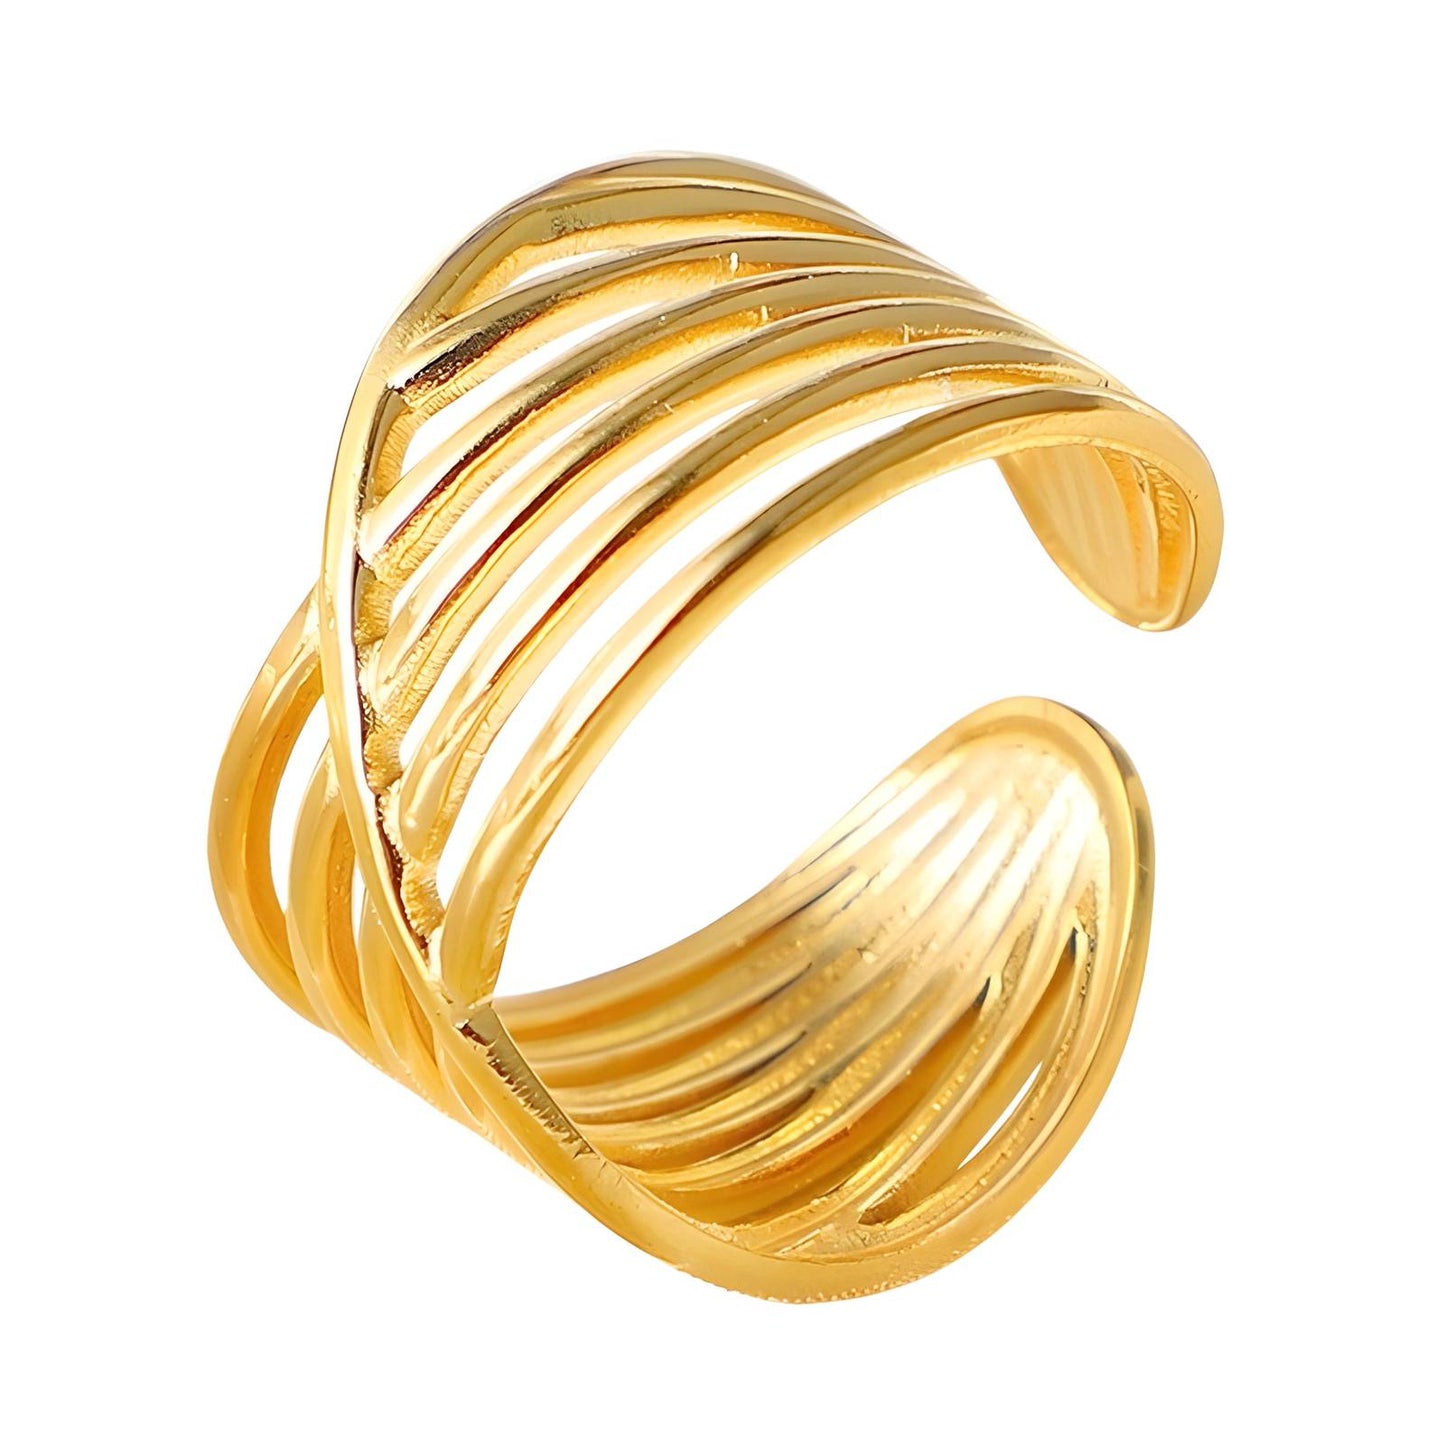 Twist of Elegance: Adjustable Gold Ring